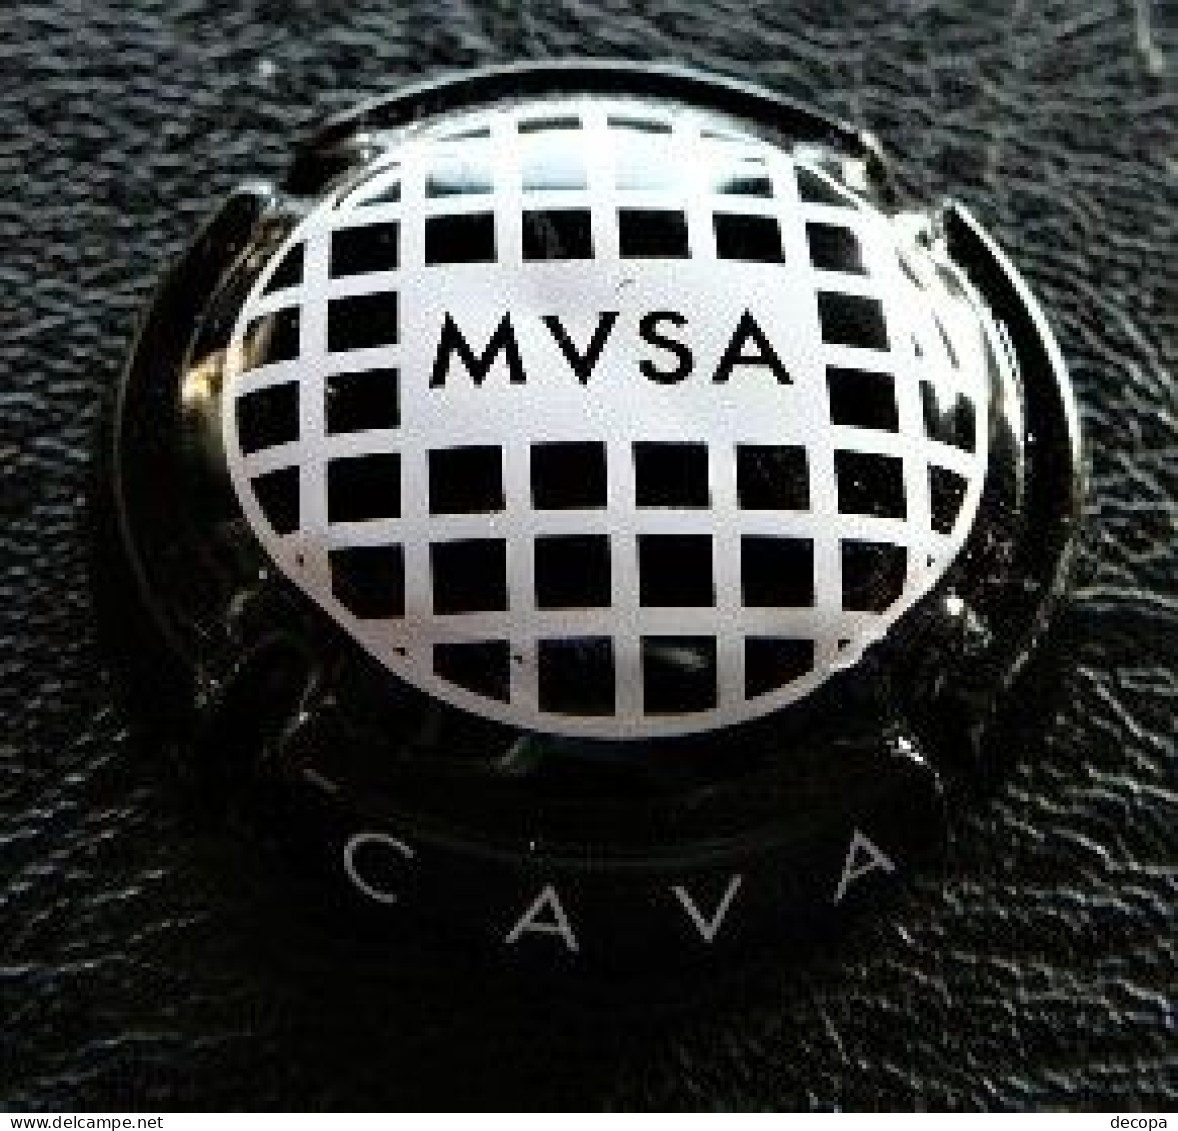 (dc-145)  Capsule  MVSA  Vallformosa   Majescules   CAVA - Sparkling Wine